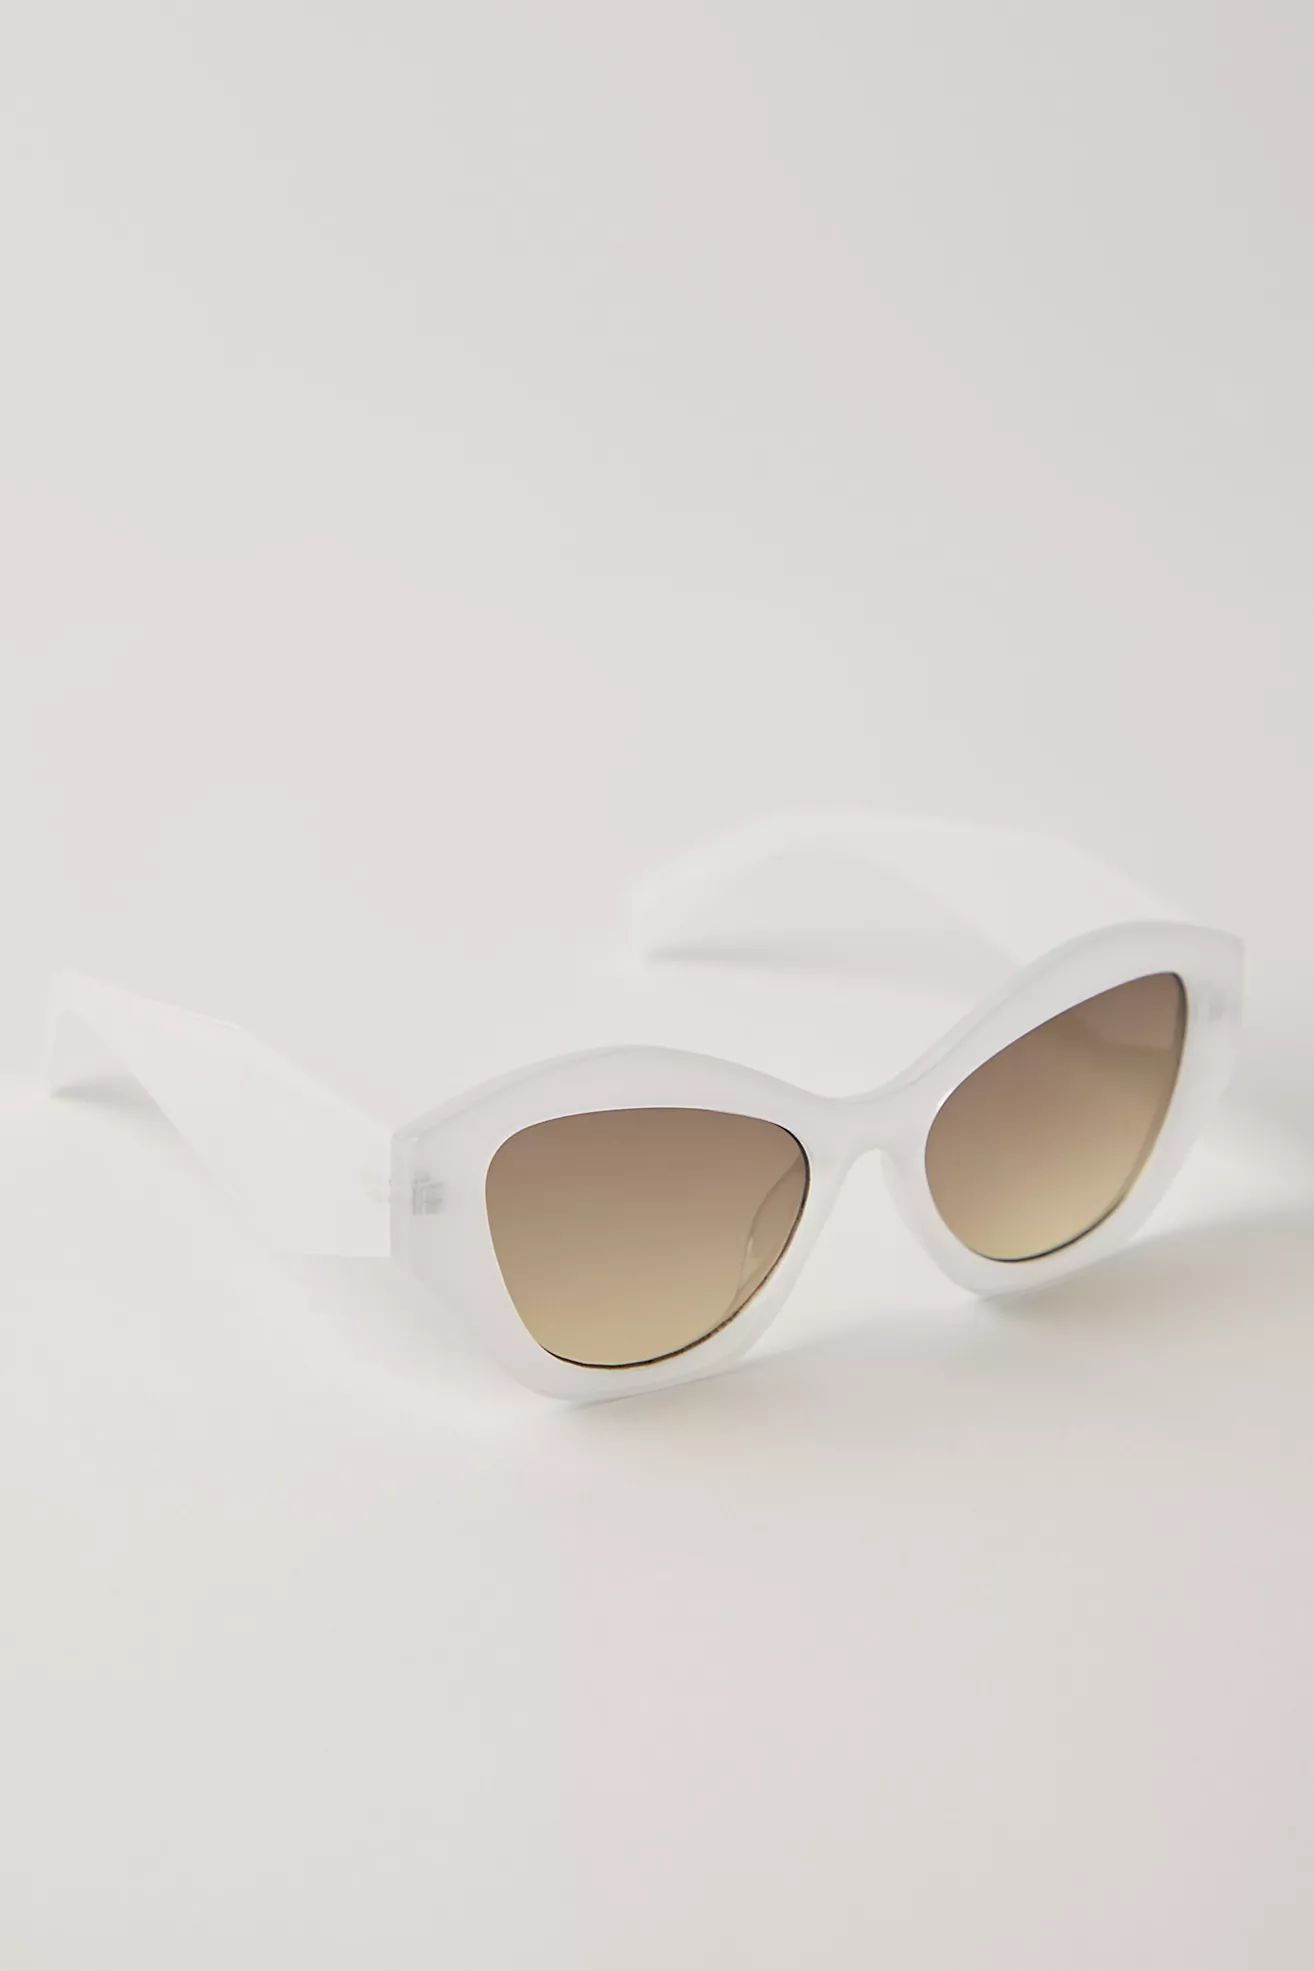 Something Slim Cateye Sunglasses | Free People (Global - UK&FR Excluded)